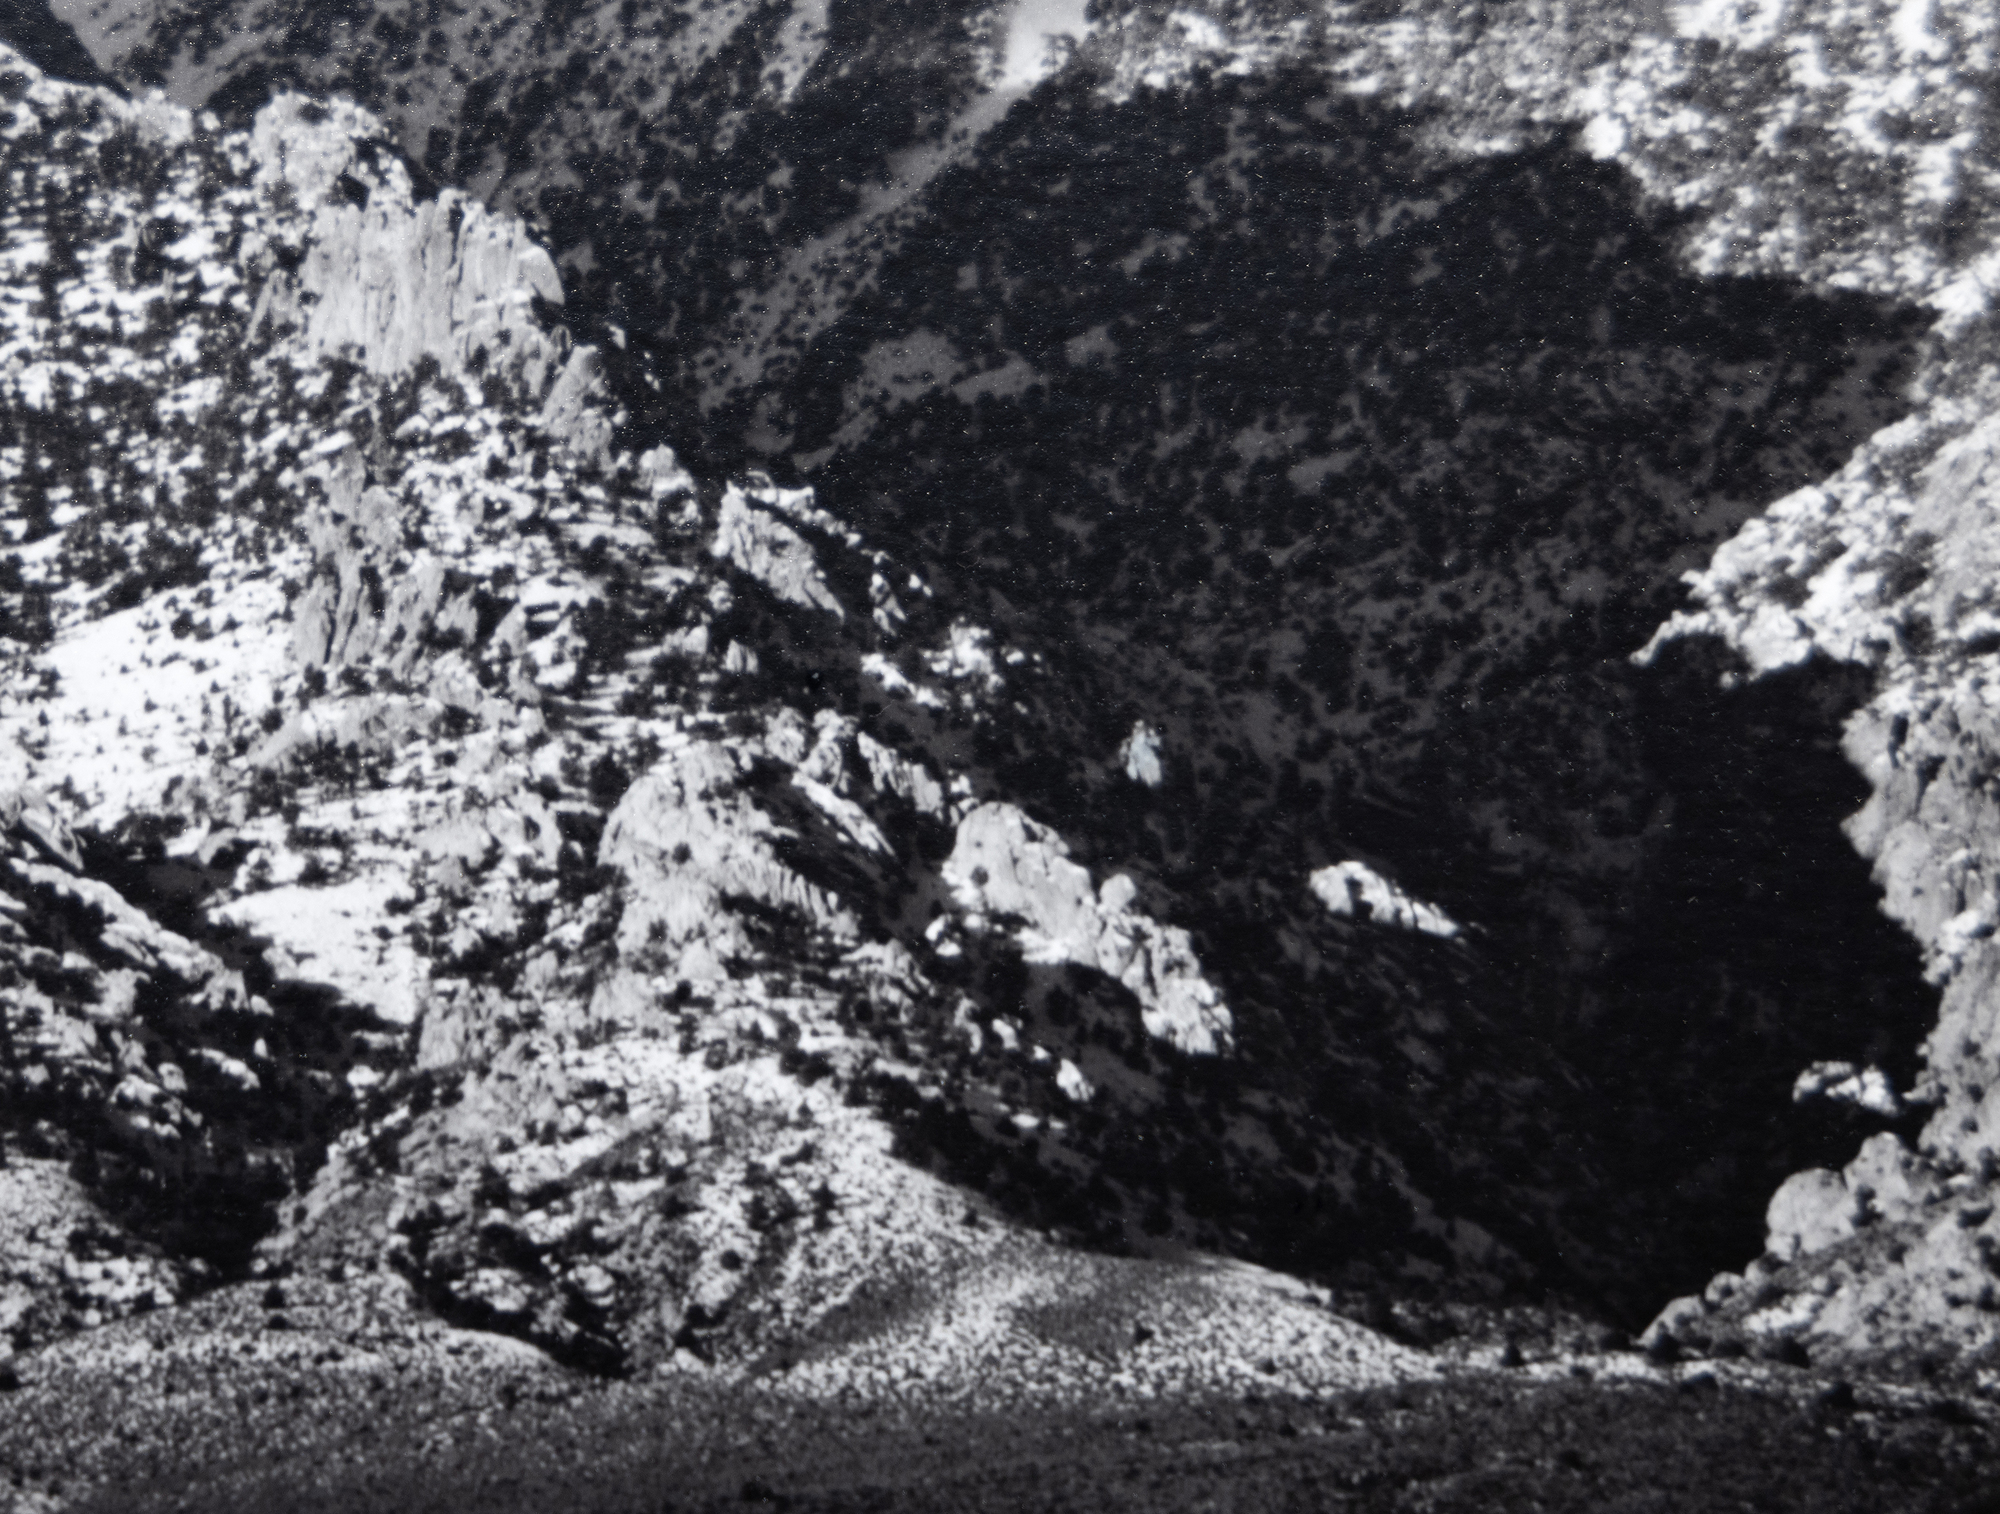 安塞尔-亚当斯（Ansel Adams）对欧文斯山谷的探索和对内华达山脉东侧高耸山峰的观赏具有重要意义。它们是最具代表性的照片之一，亚当斯通过这些照片捕捉到了内华达山脉一望无际的壮丽景色，同时也生动地展现了干旱谷底的深度和广度。威廉姆森山，内华达山脉，取景于欧文斯山谷，可能拍摄于 1944 年，当时刚采用分区系统不久，分区系统可实现宽色调范围和平衡曝光，高光和阴影都很清晰。这幅作品印制于 1978 年 8 月，被许多博物馆收藏，但在收藏家中，它属于安塞尔-亚当斯较为罕见的版画作品。